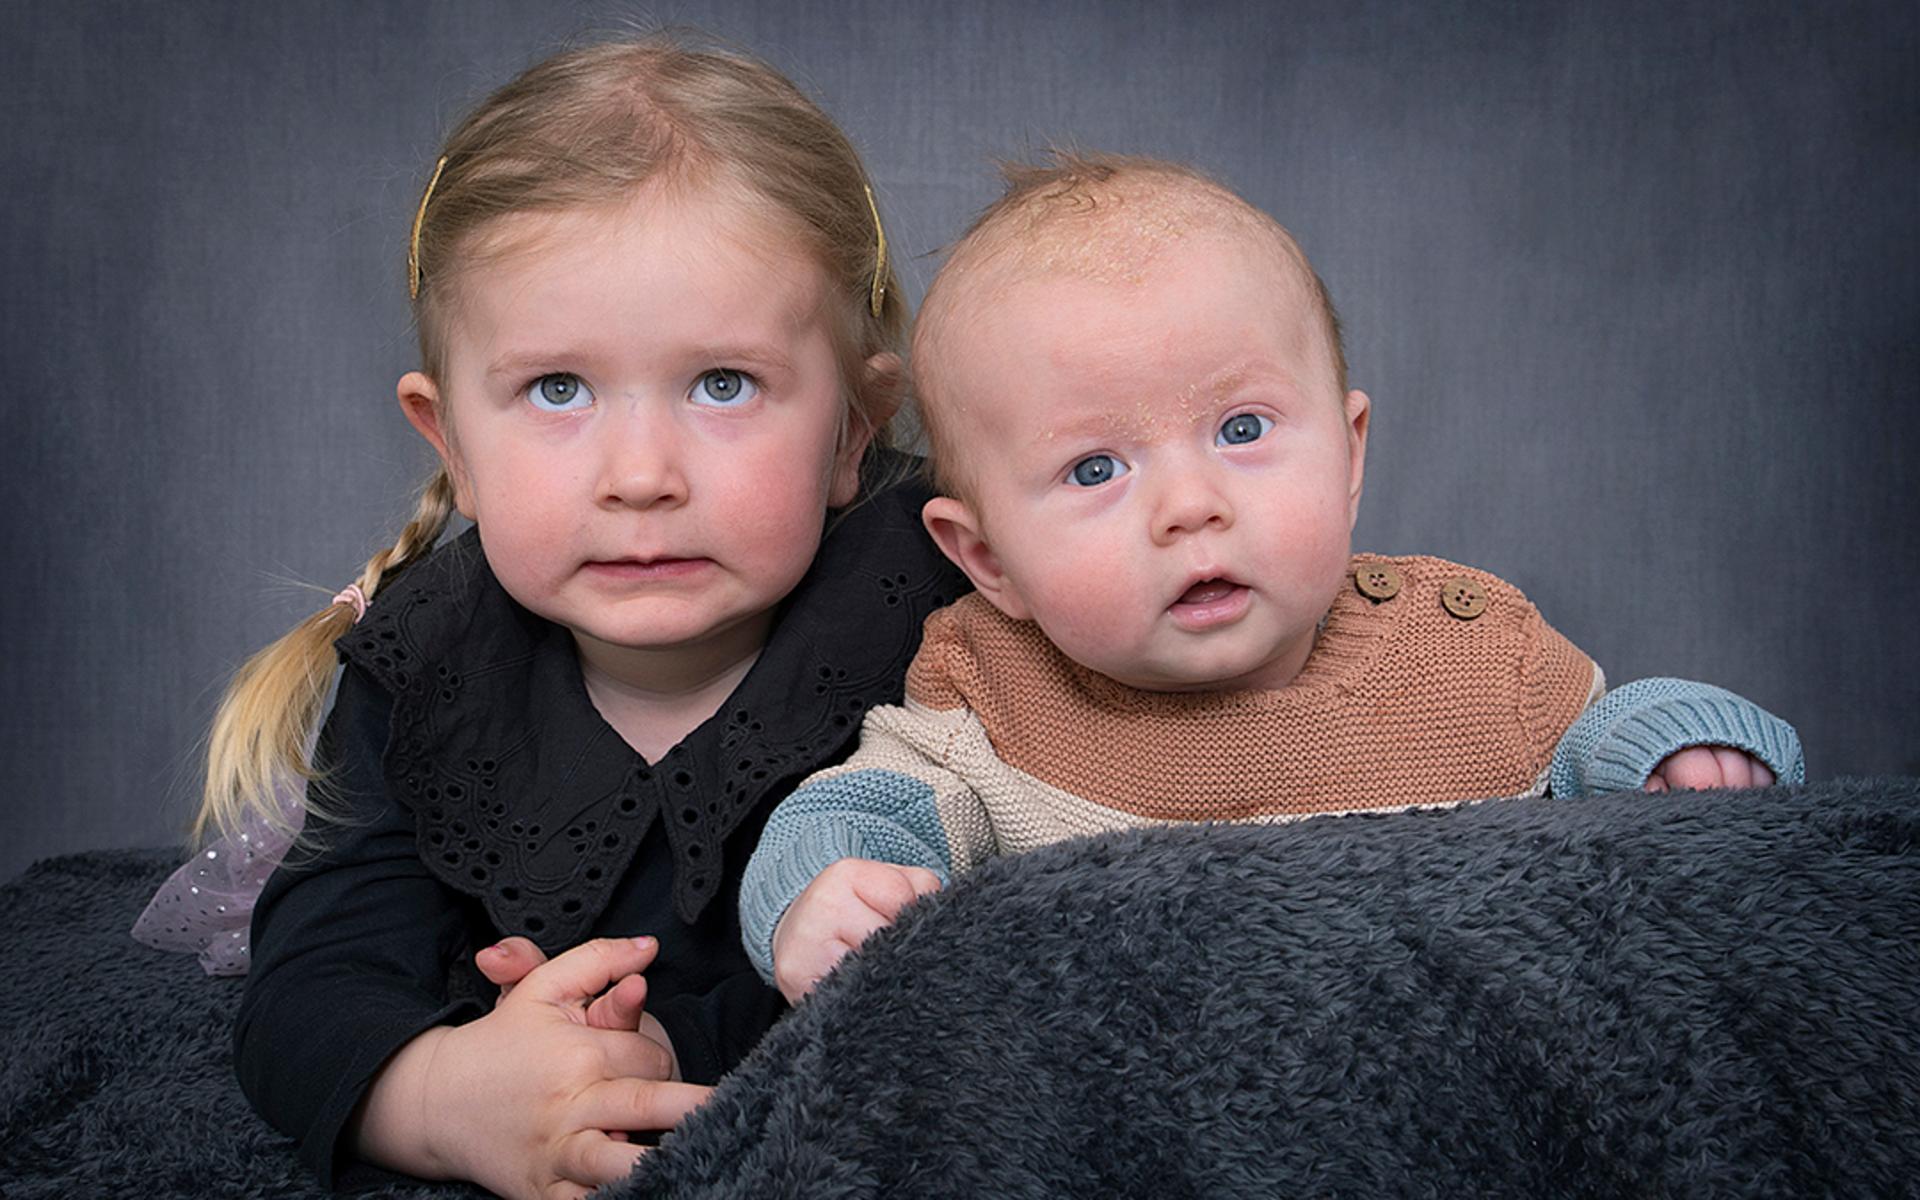 Sofie Pålsson och Markus Jönsson, Eldsberga fick den 25 december en pojke som heter Arvid. Han vägde 4610 g och var 54 cm lång. Storasyster heter Signe.